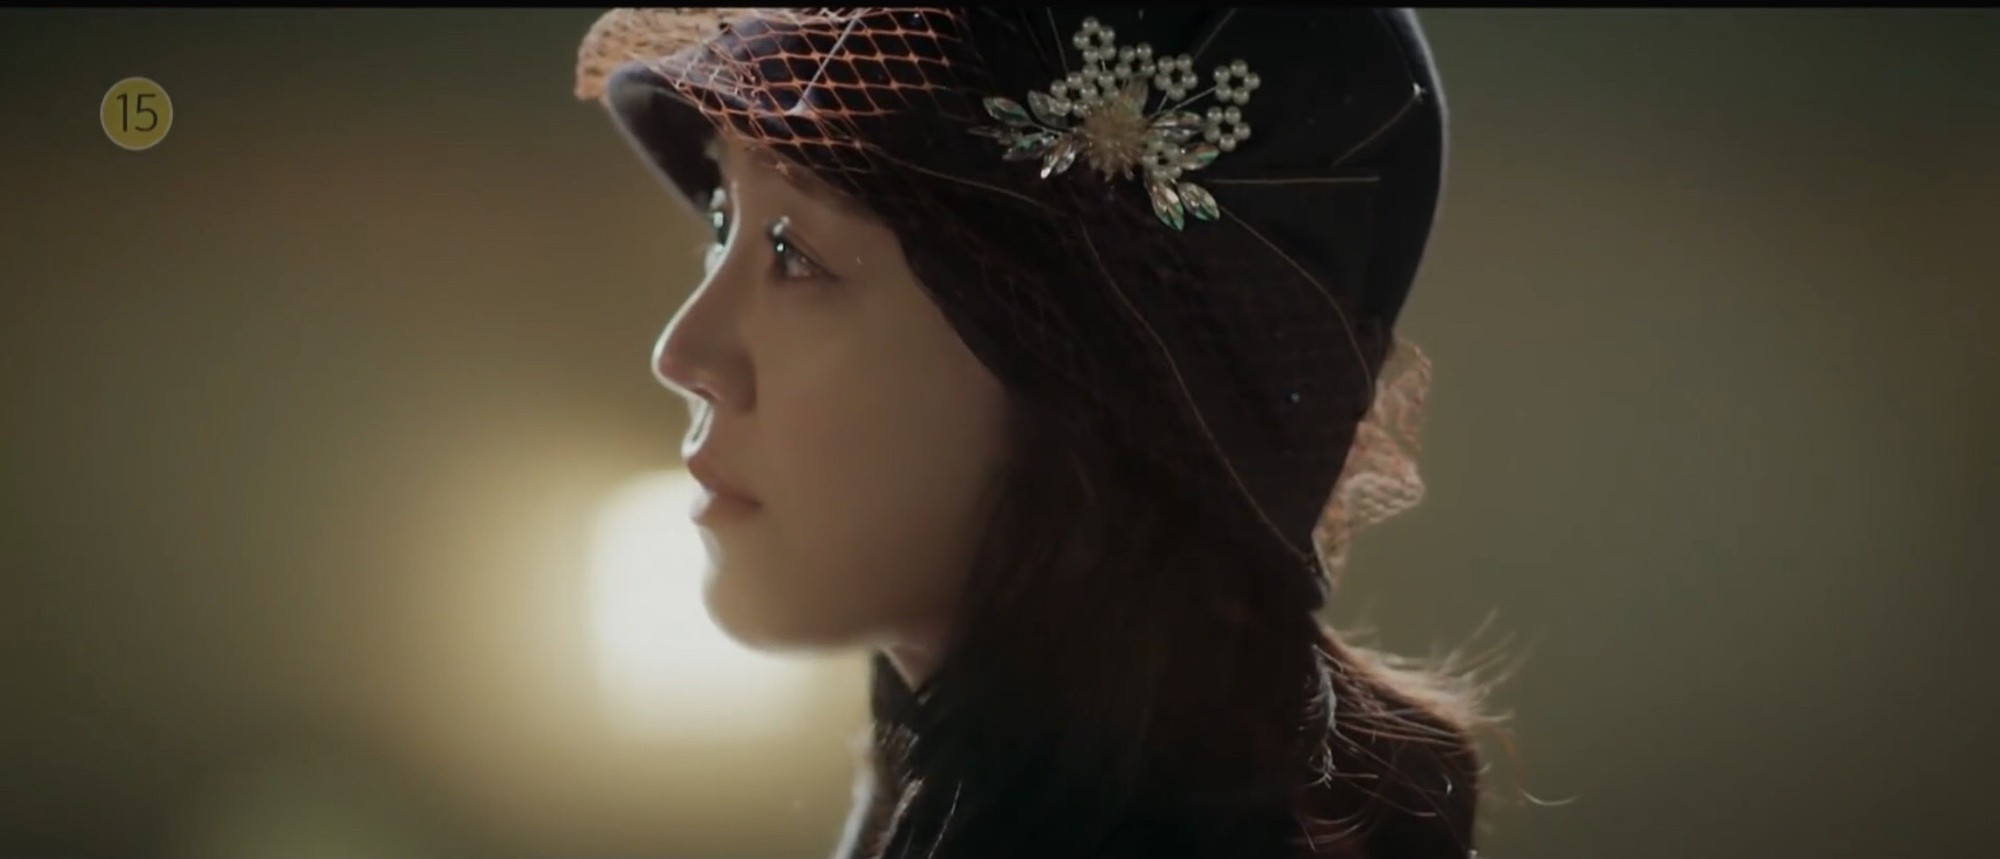 Lee Jong Suk và Shin Hye Sun sánh đôi trong teaser 34 giây đẹp mà buồn mênh mang của Hymn of Death - Ảnh 7.